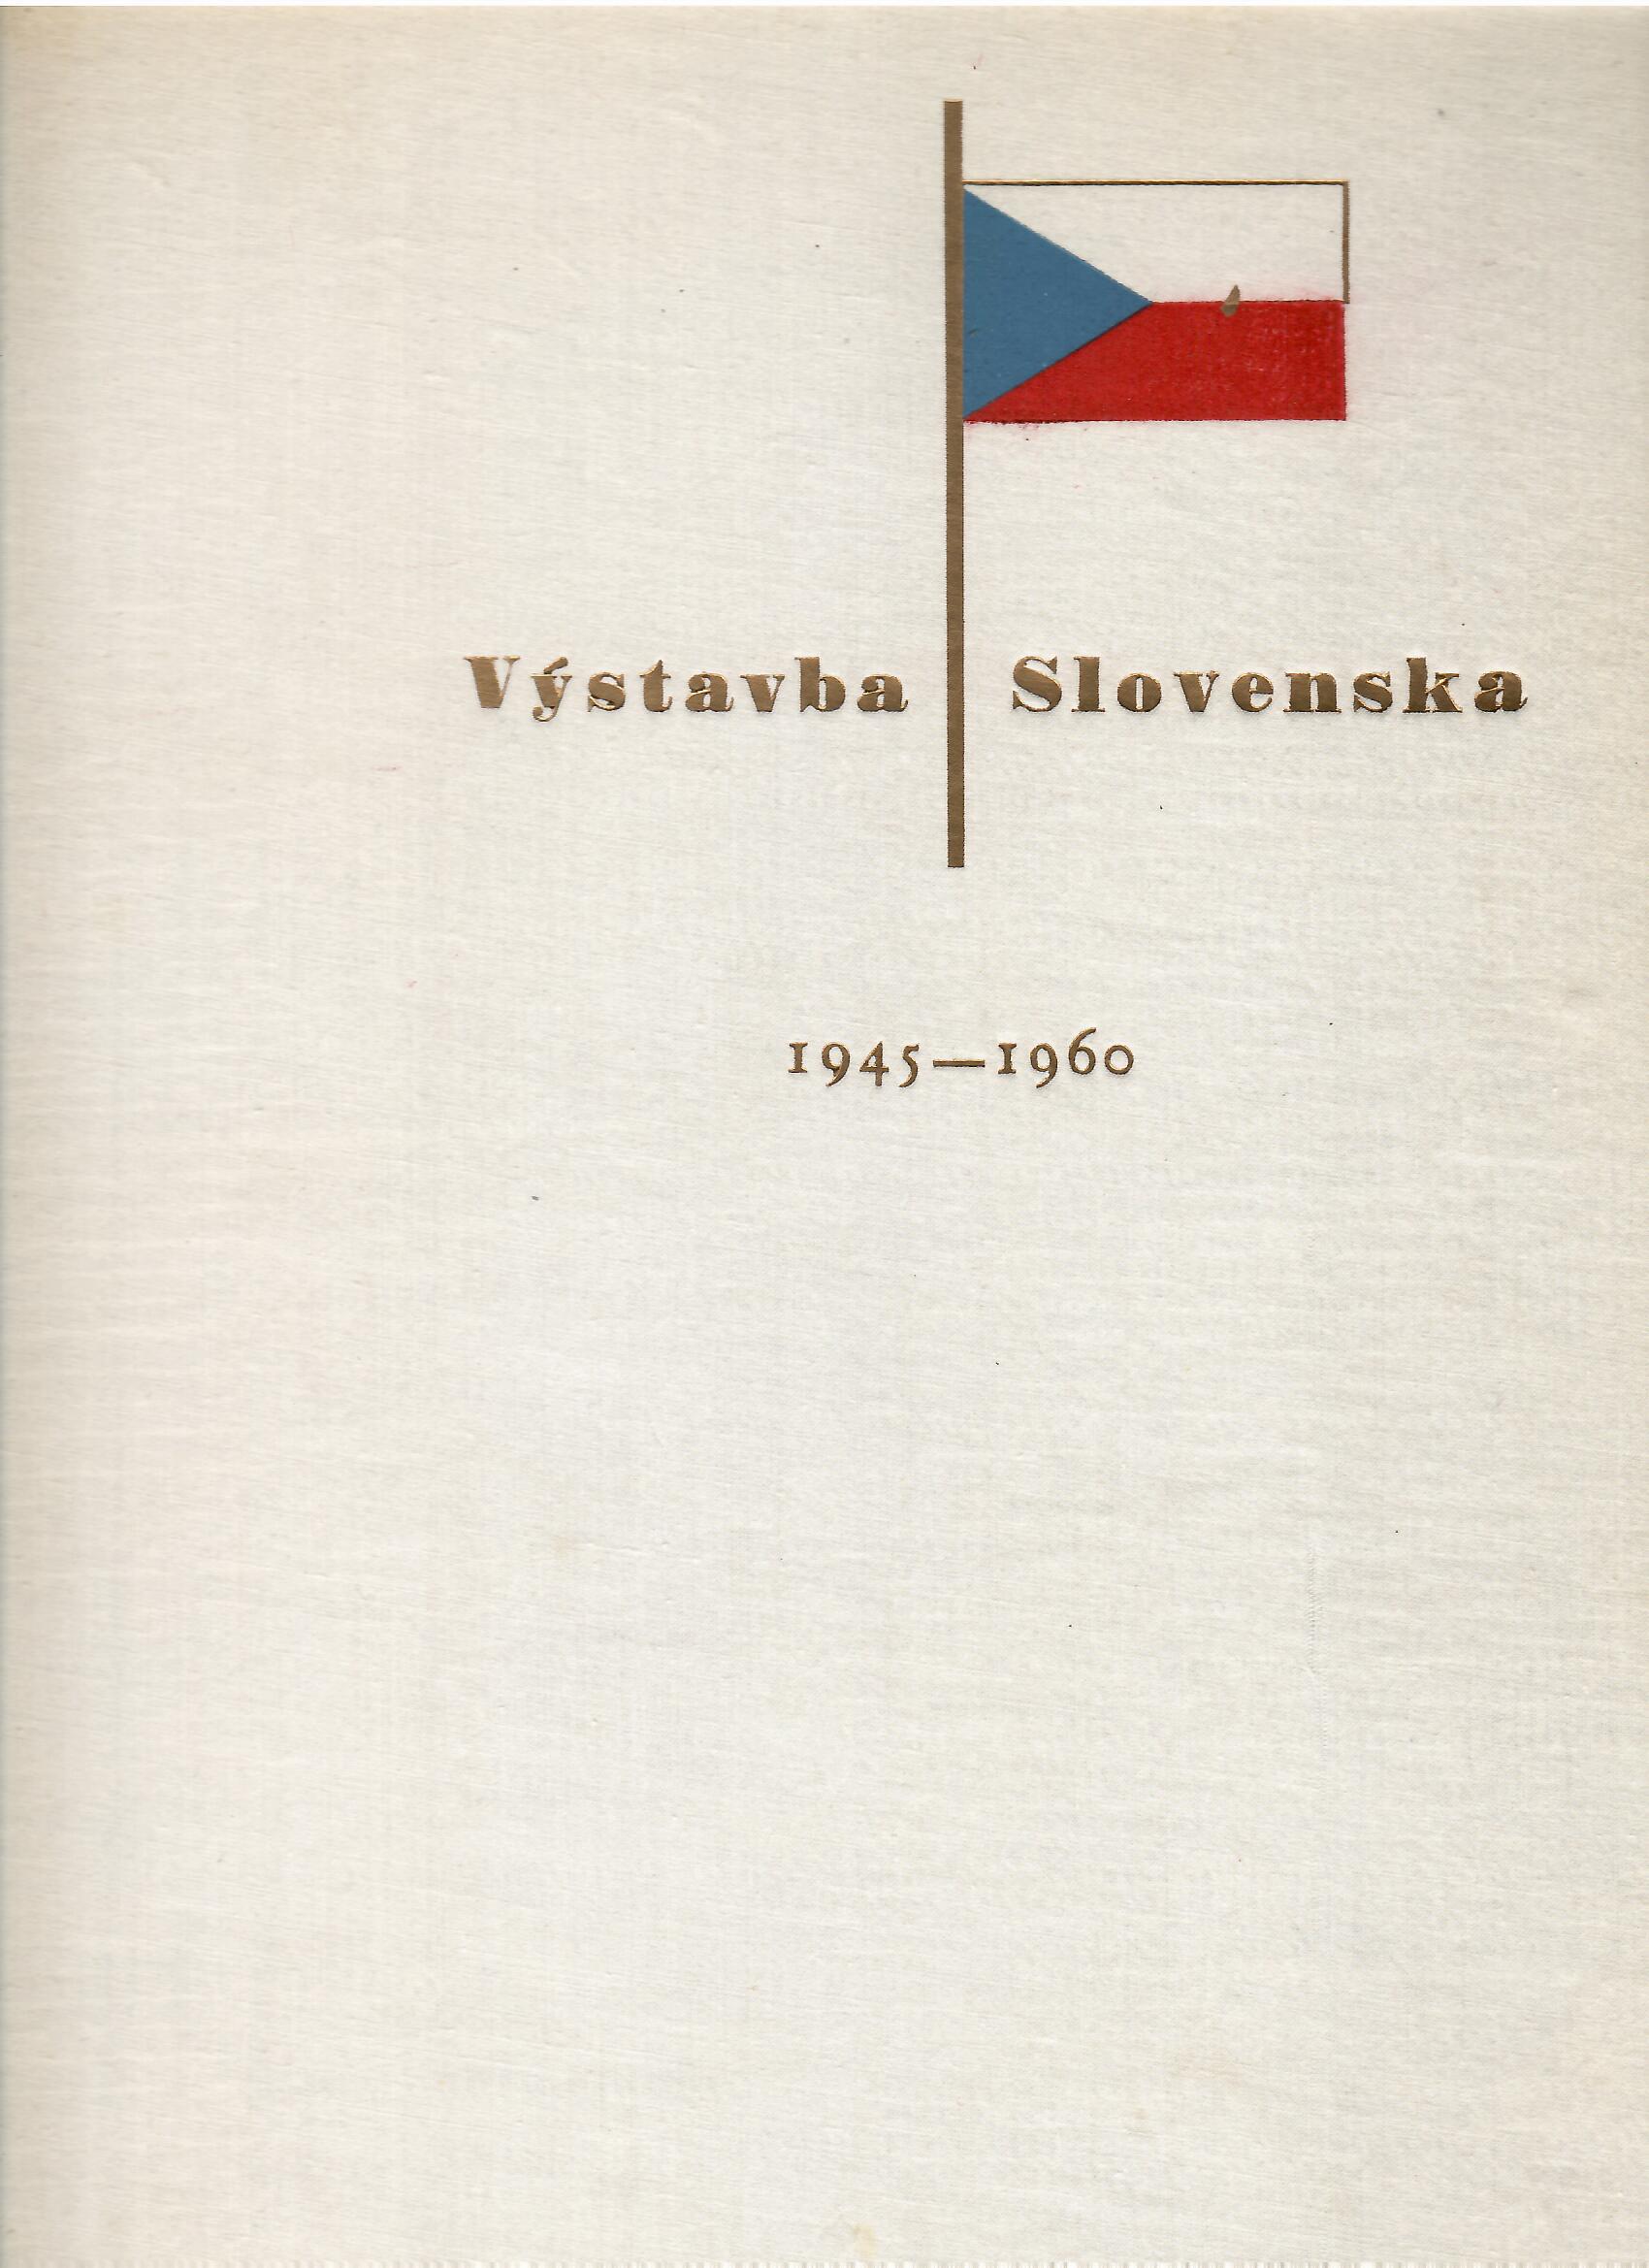 Kamil Gross, Jozef Skala, Tibor Zalčík (eds.): Výstavba Slovenska 1945-1960